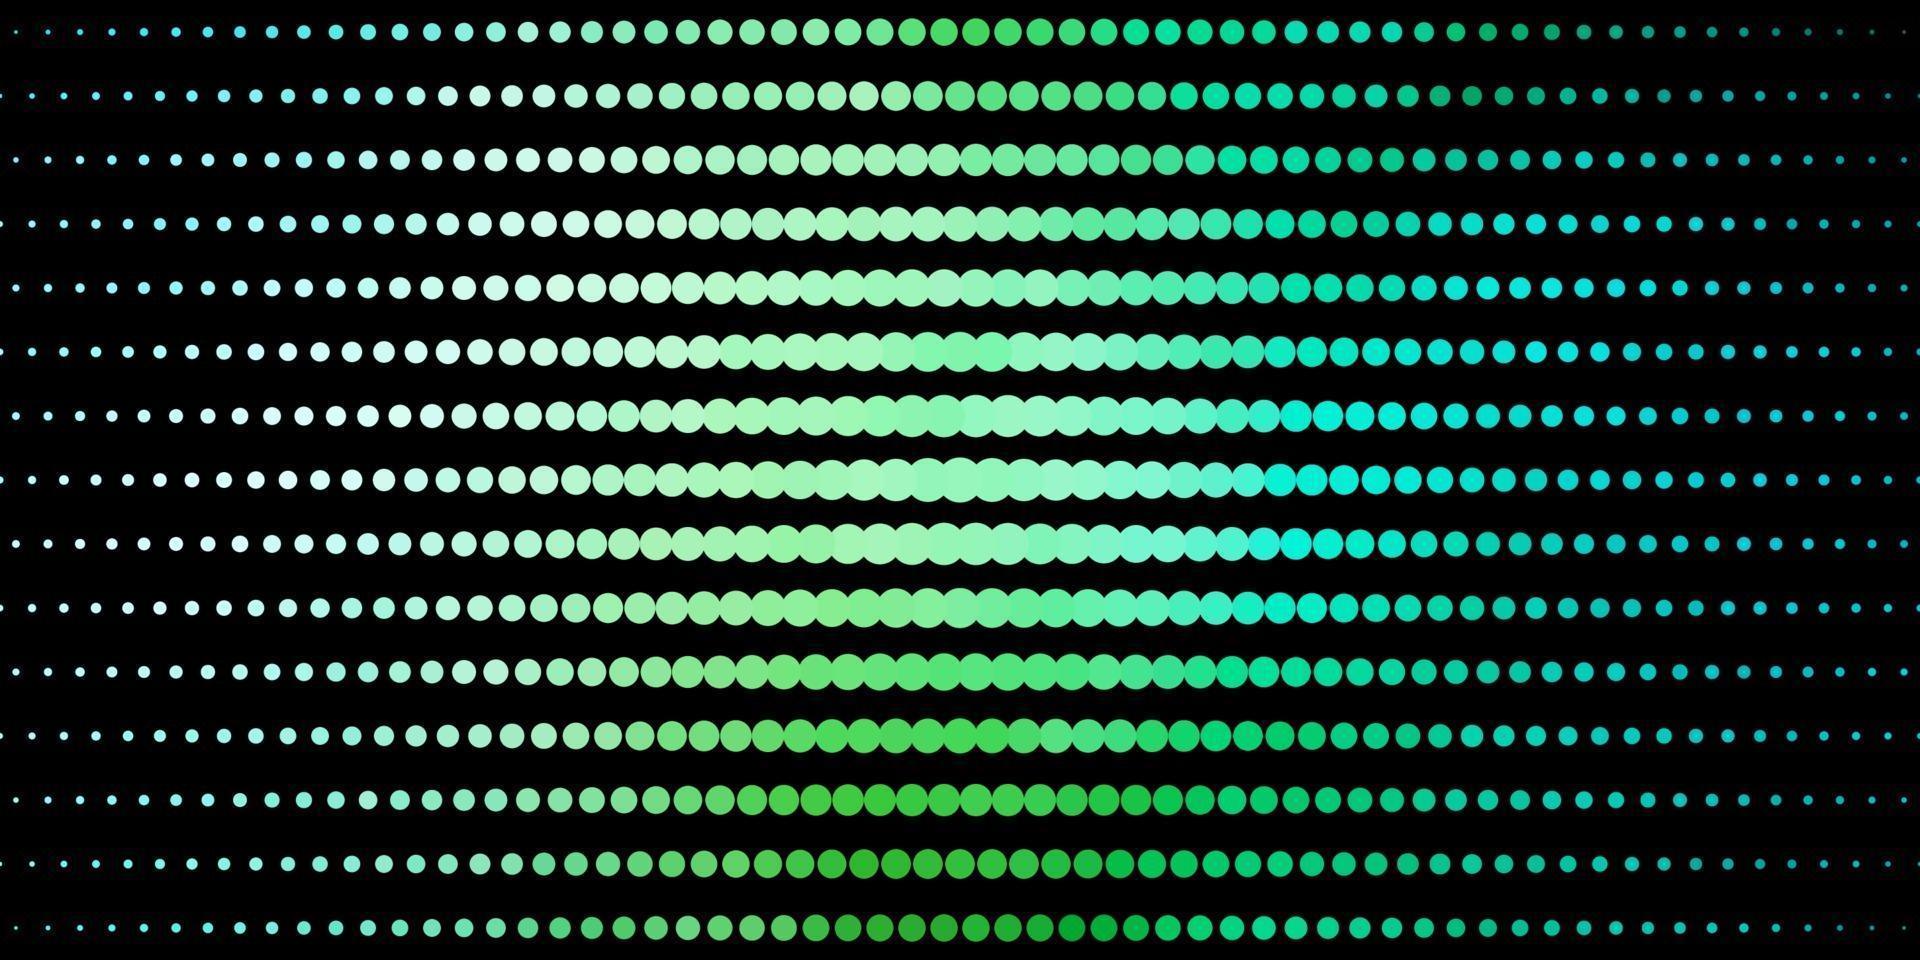 sfondo vettoriale azzurro, verde con cerchi.